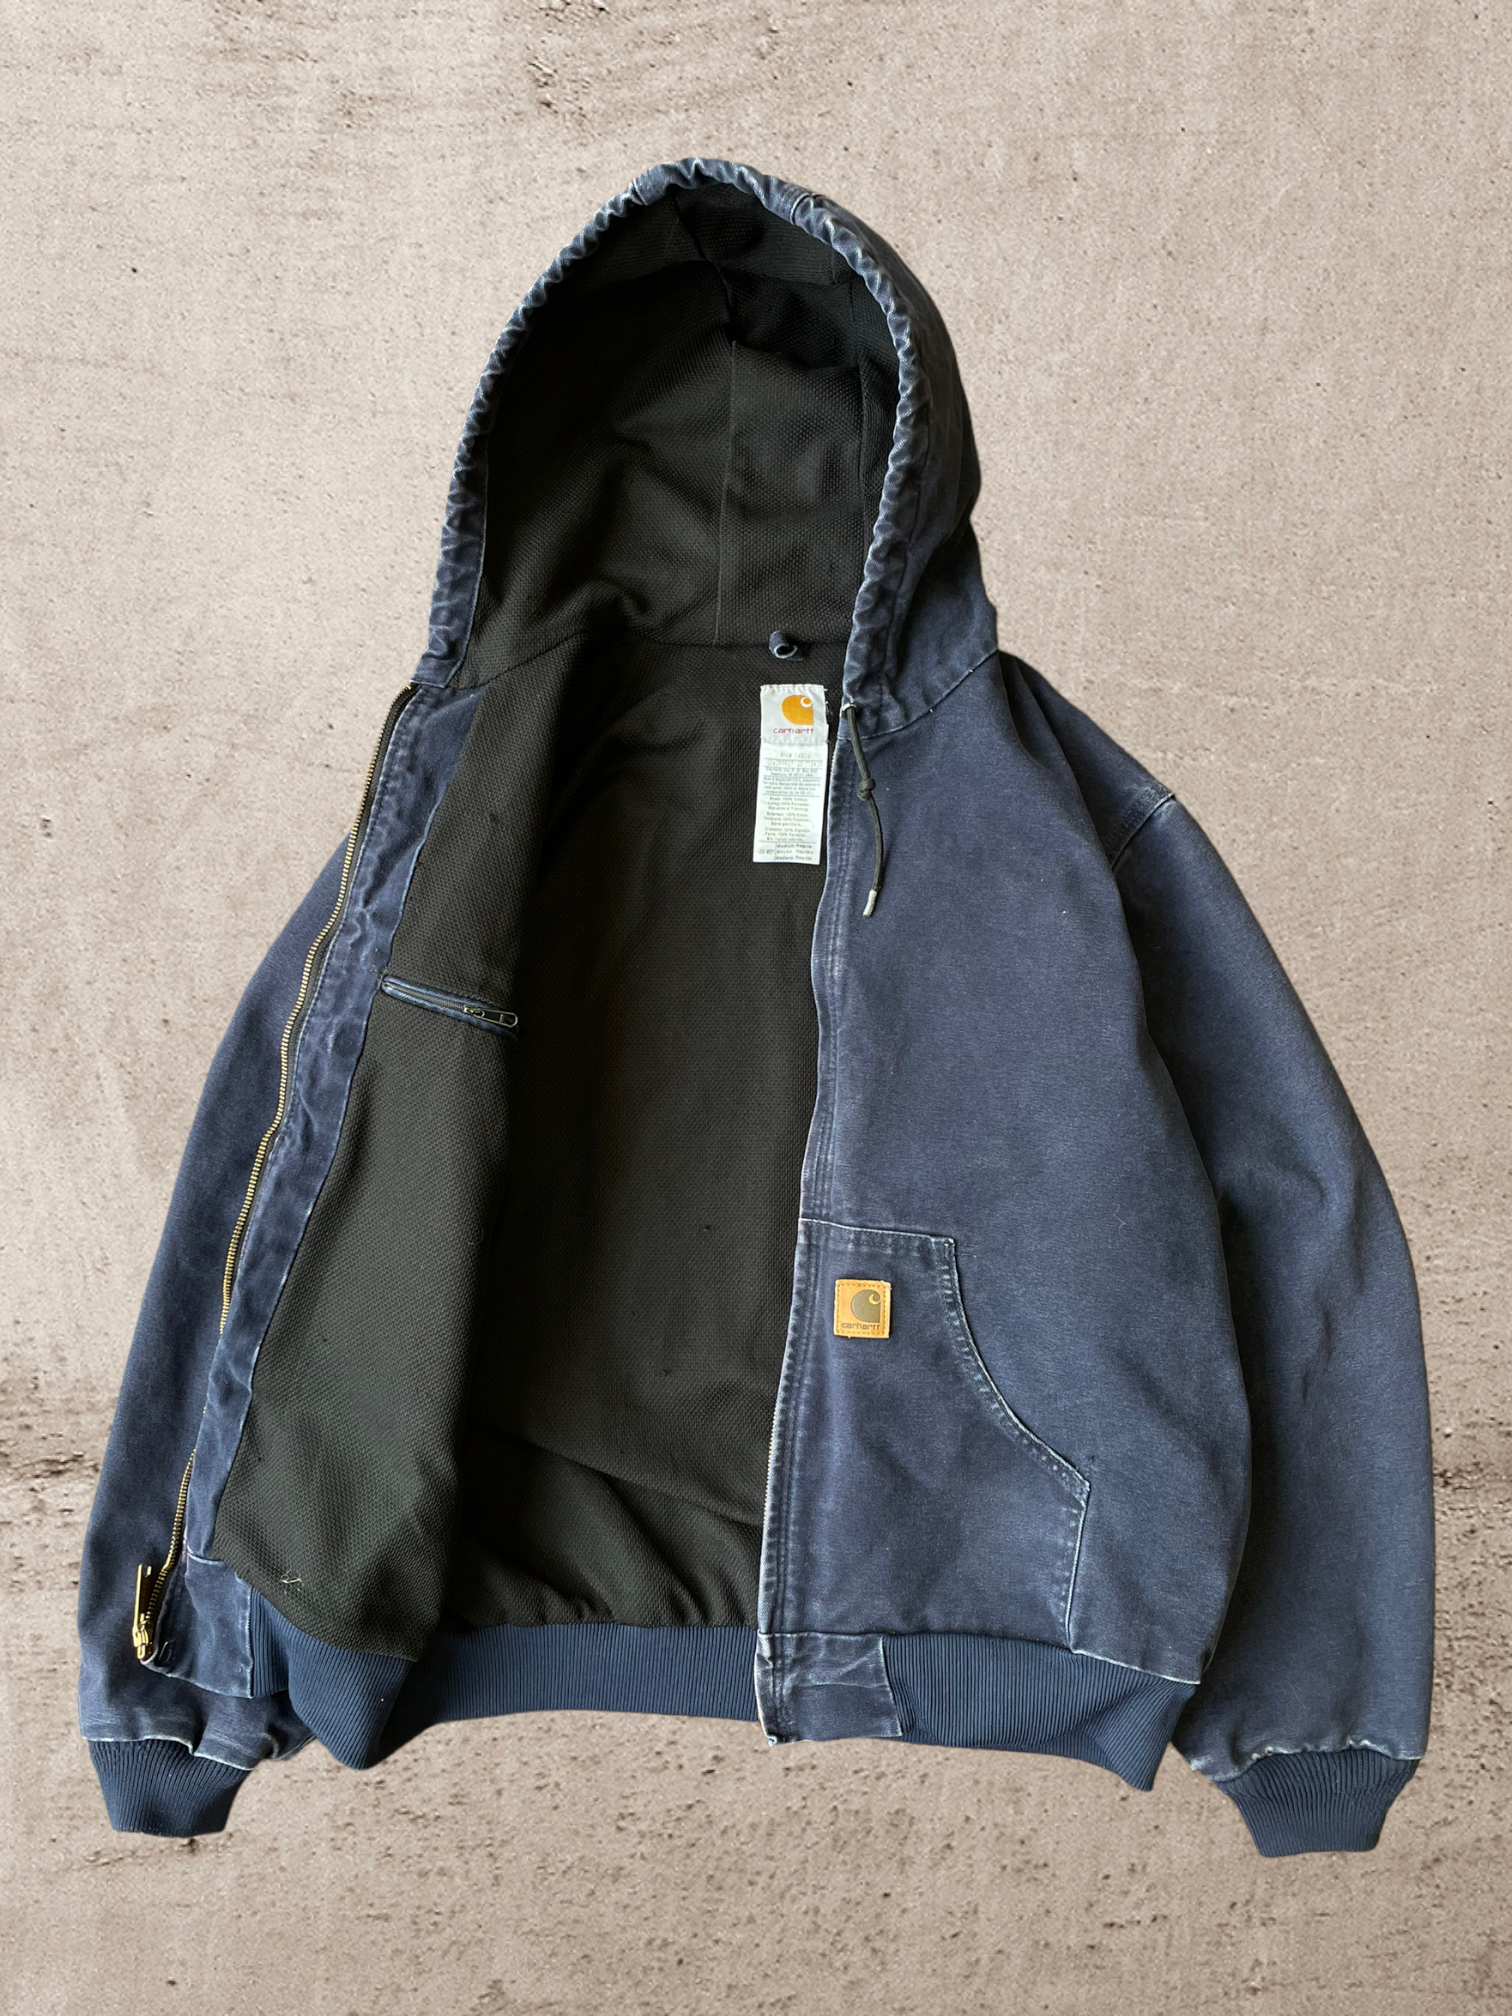 Vintage Carhartt Hooded Jacket - Medium